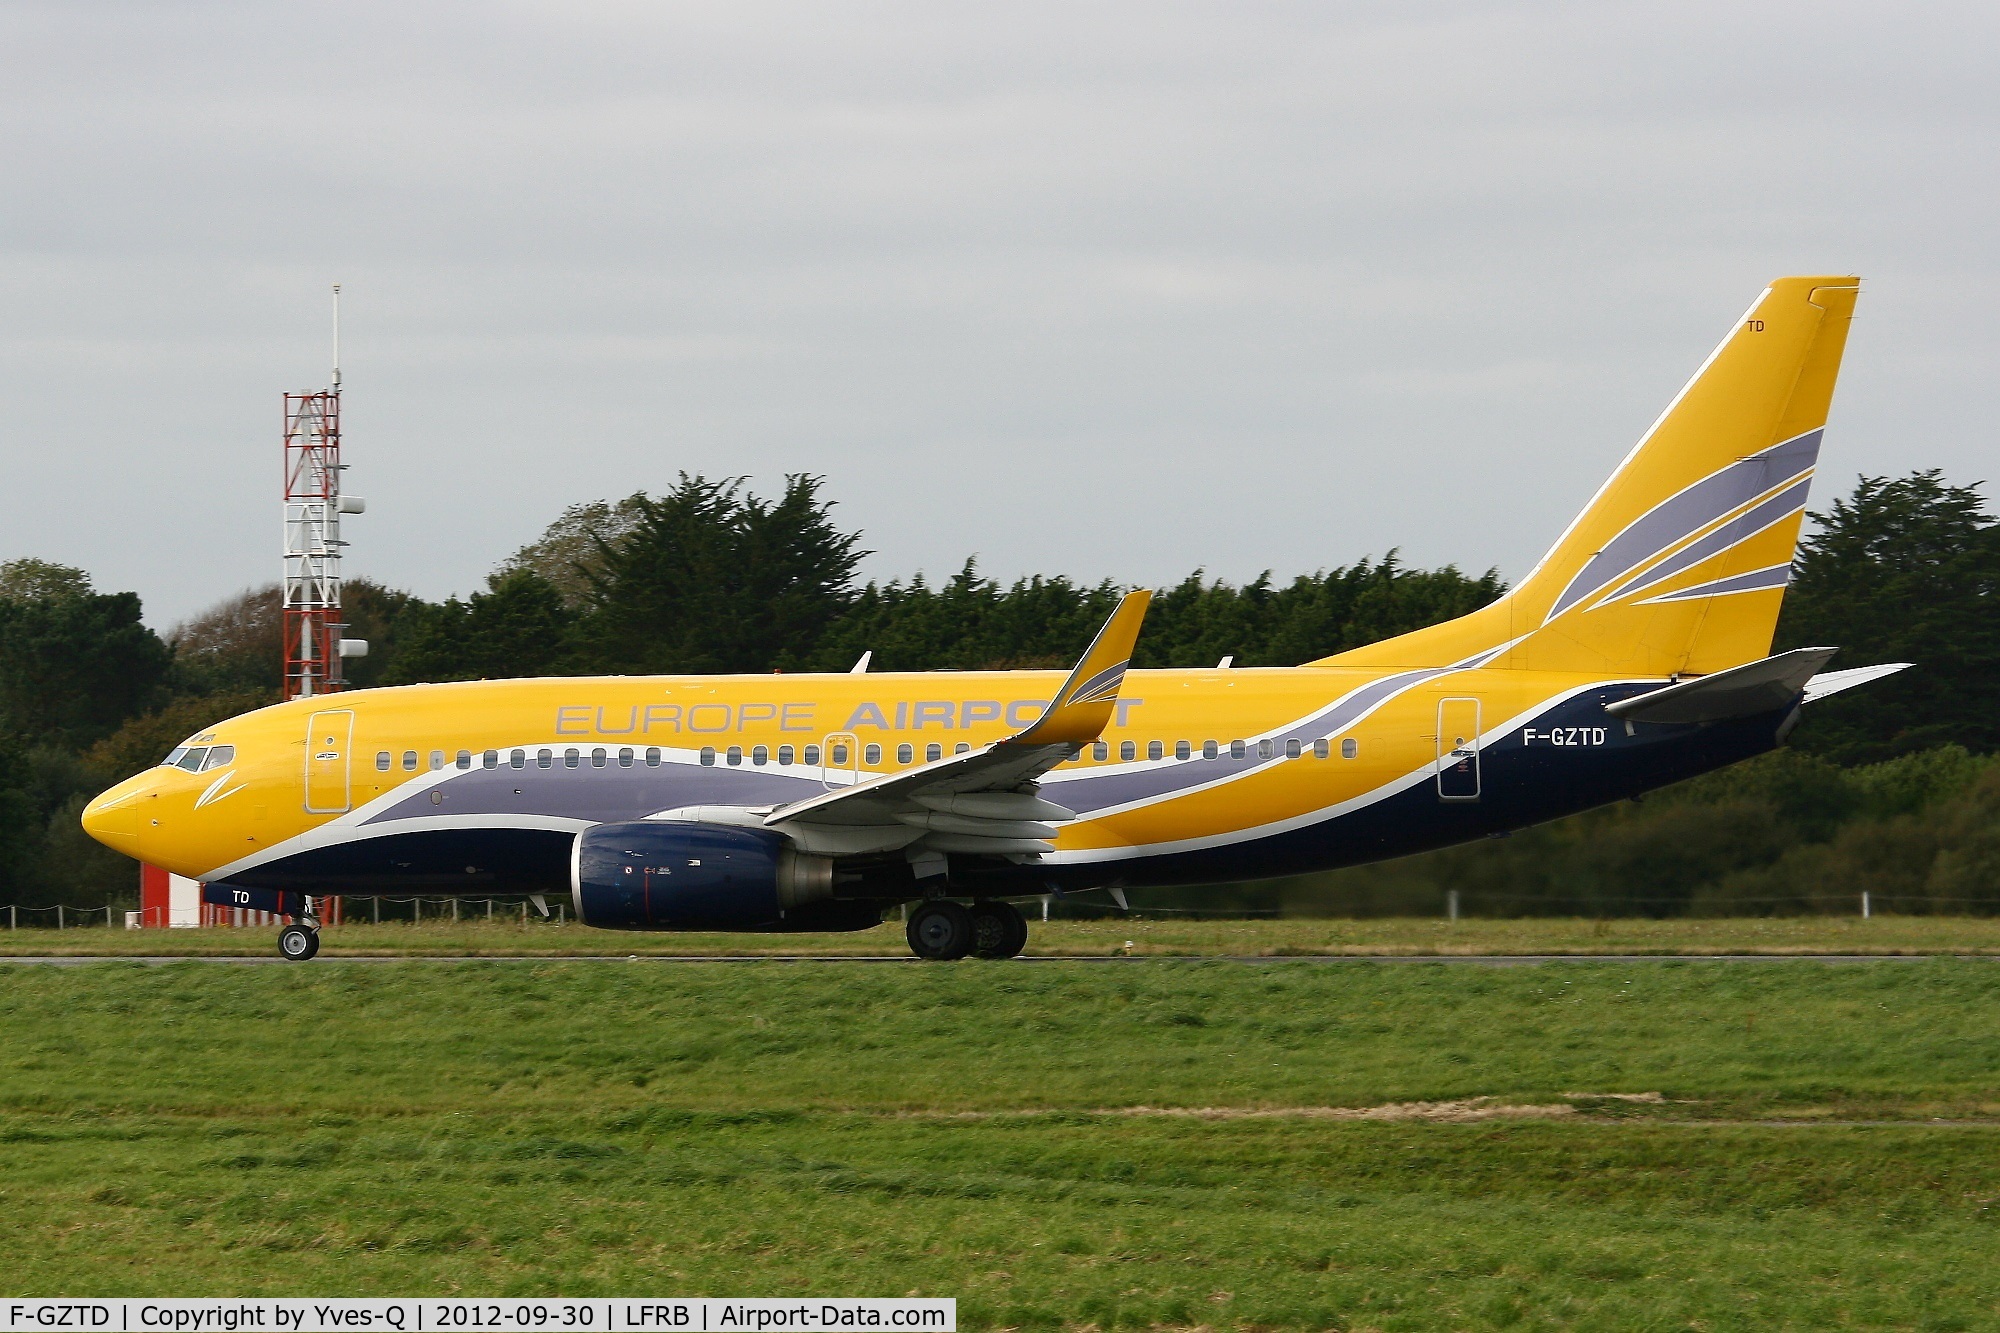 F-GZTD, 2003 Boeing 737-73V C/N 32418, Boeing 737-73V, Take off run rwy 25L, Brest-Bretagne Airport (LFRB-BES)